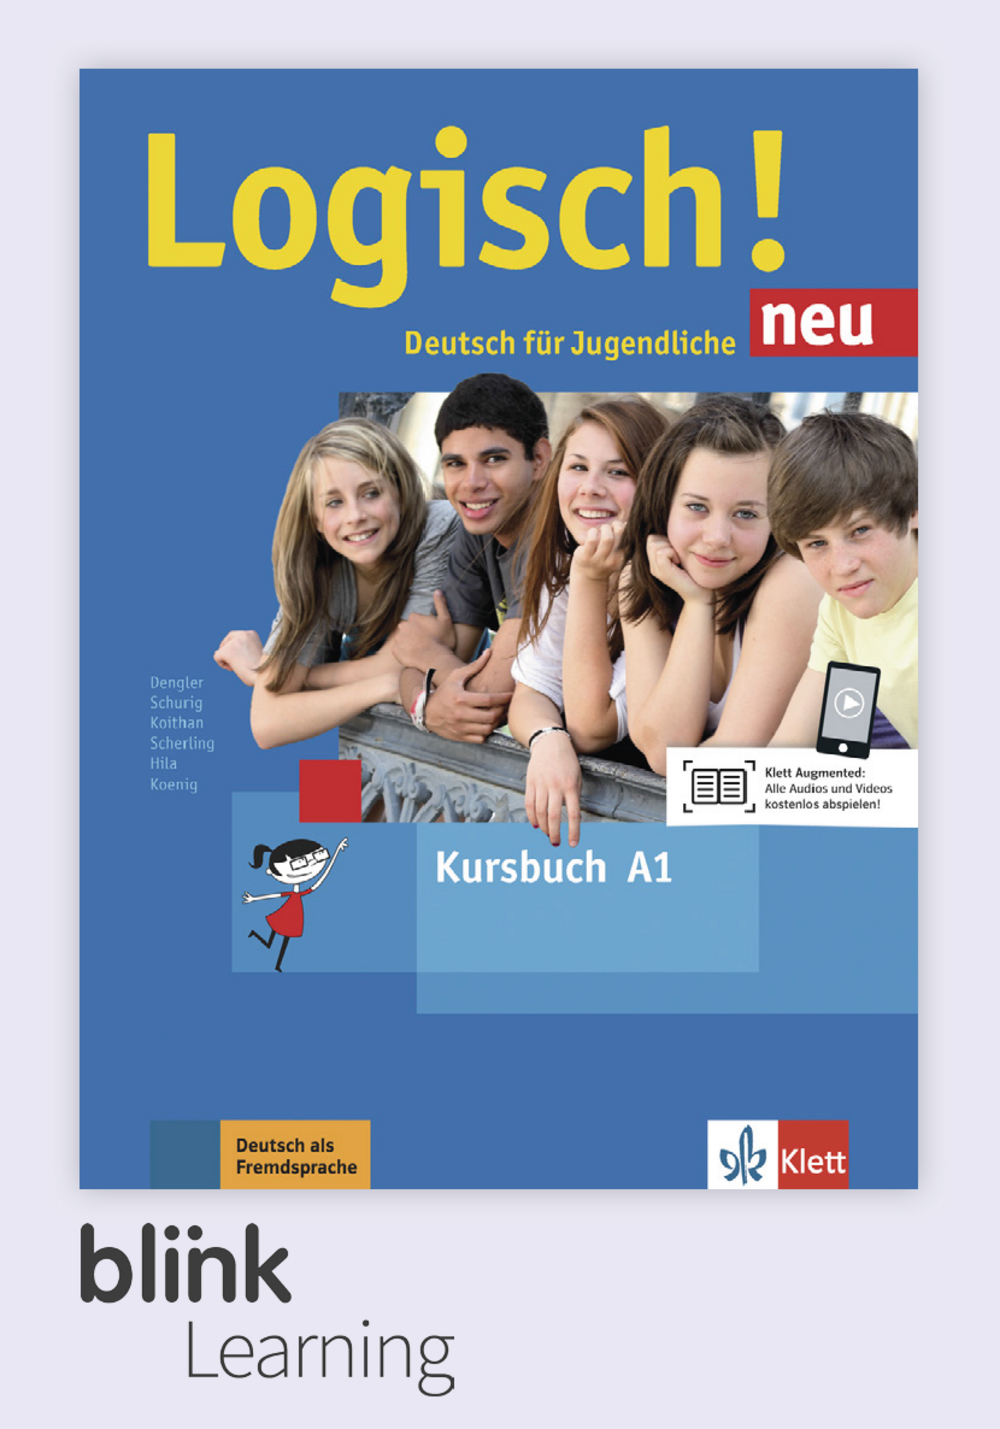 Logisch! NEU A1 Digital Kursbuch für Unterrichtende/ Цифровой учебник для учителя